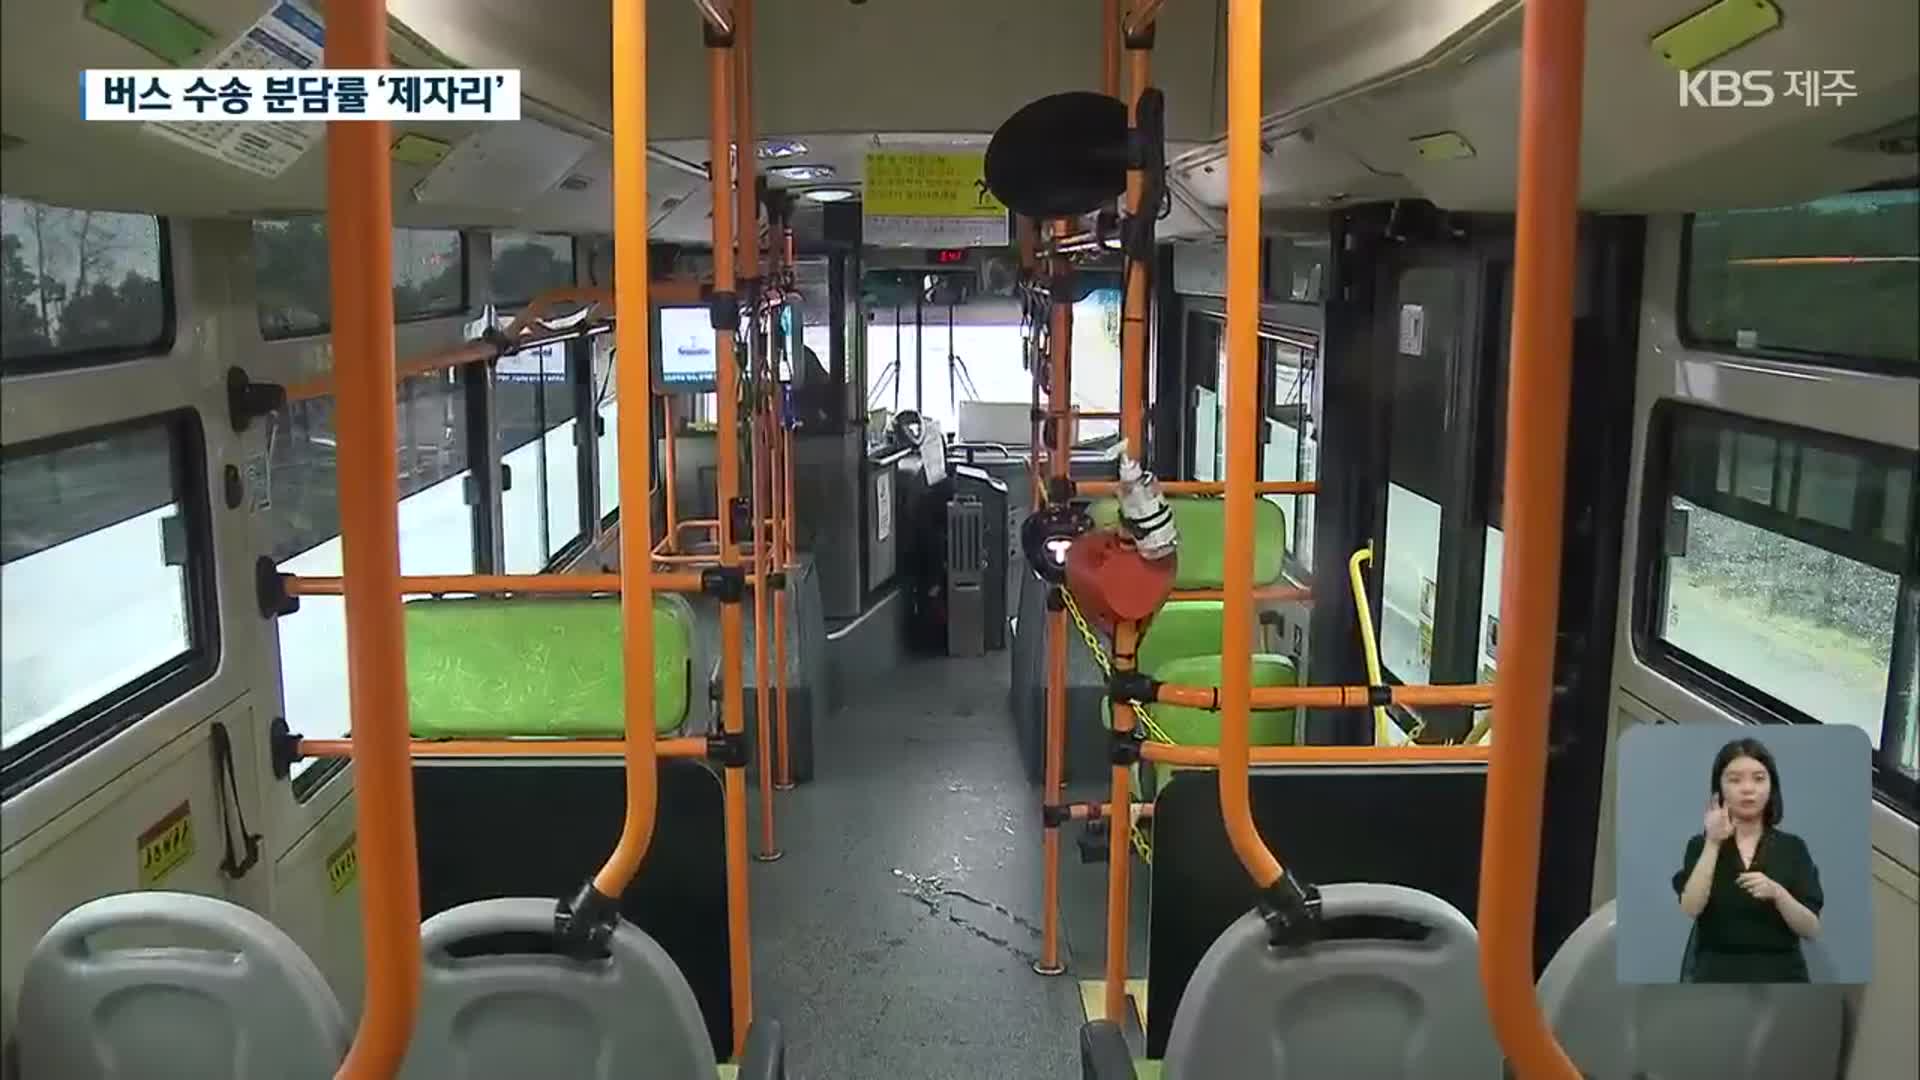 [제주 버스 준공영제]④ 30년 만에 버스 노선 개편에도 이용률 저조…이유는?